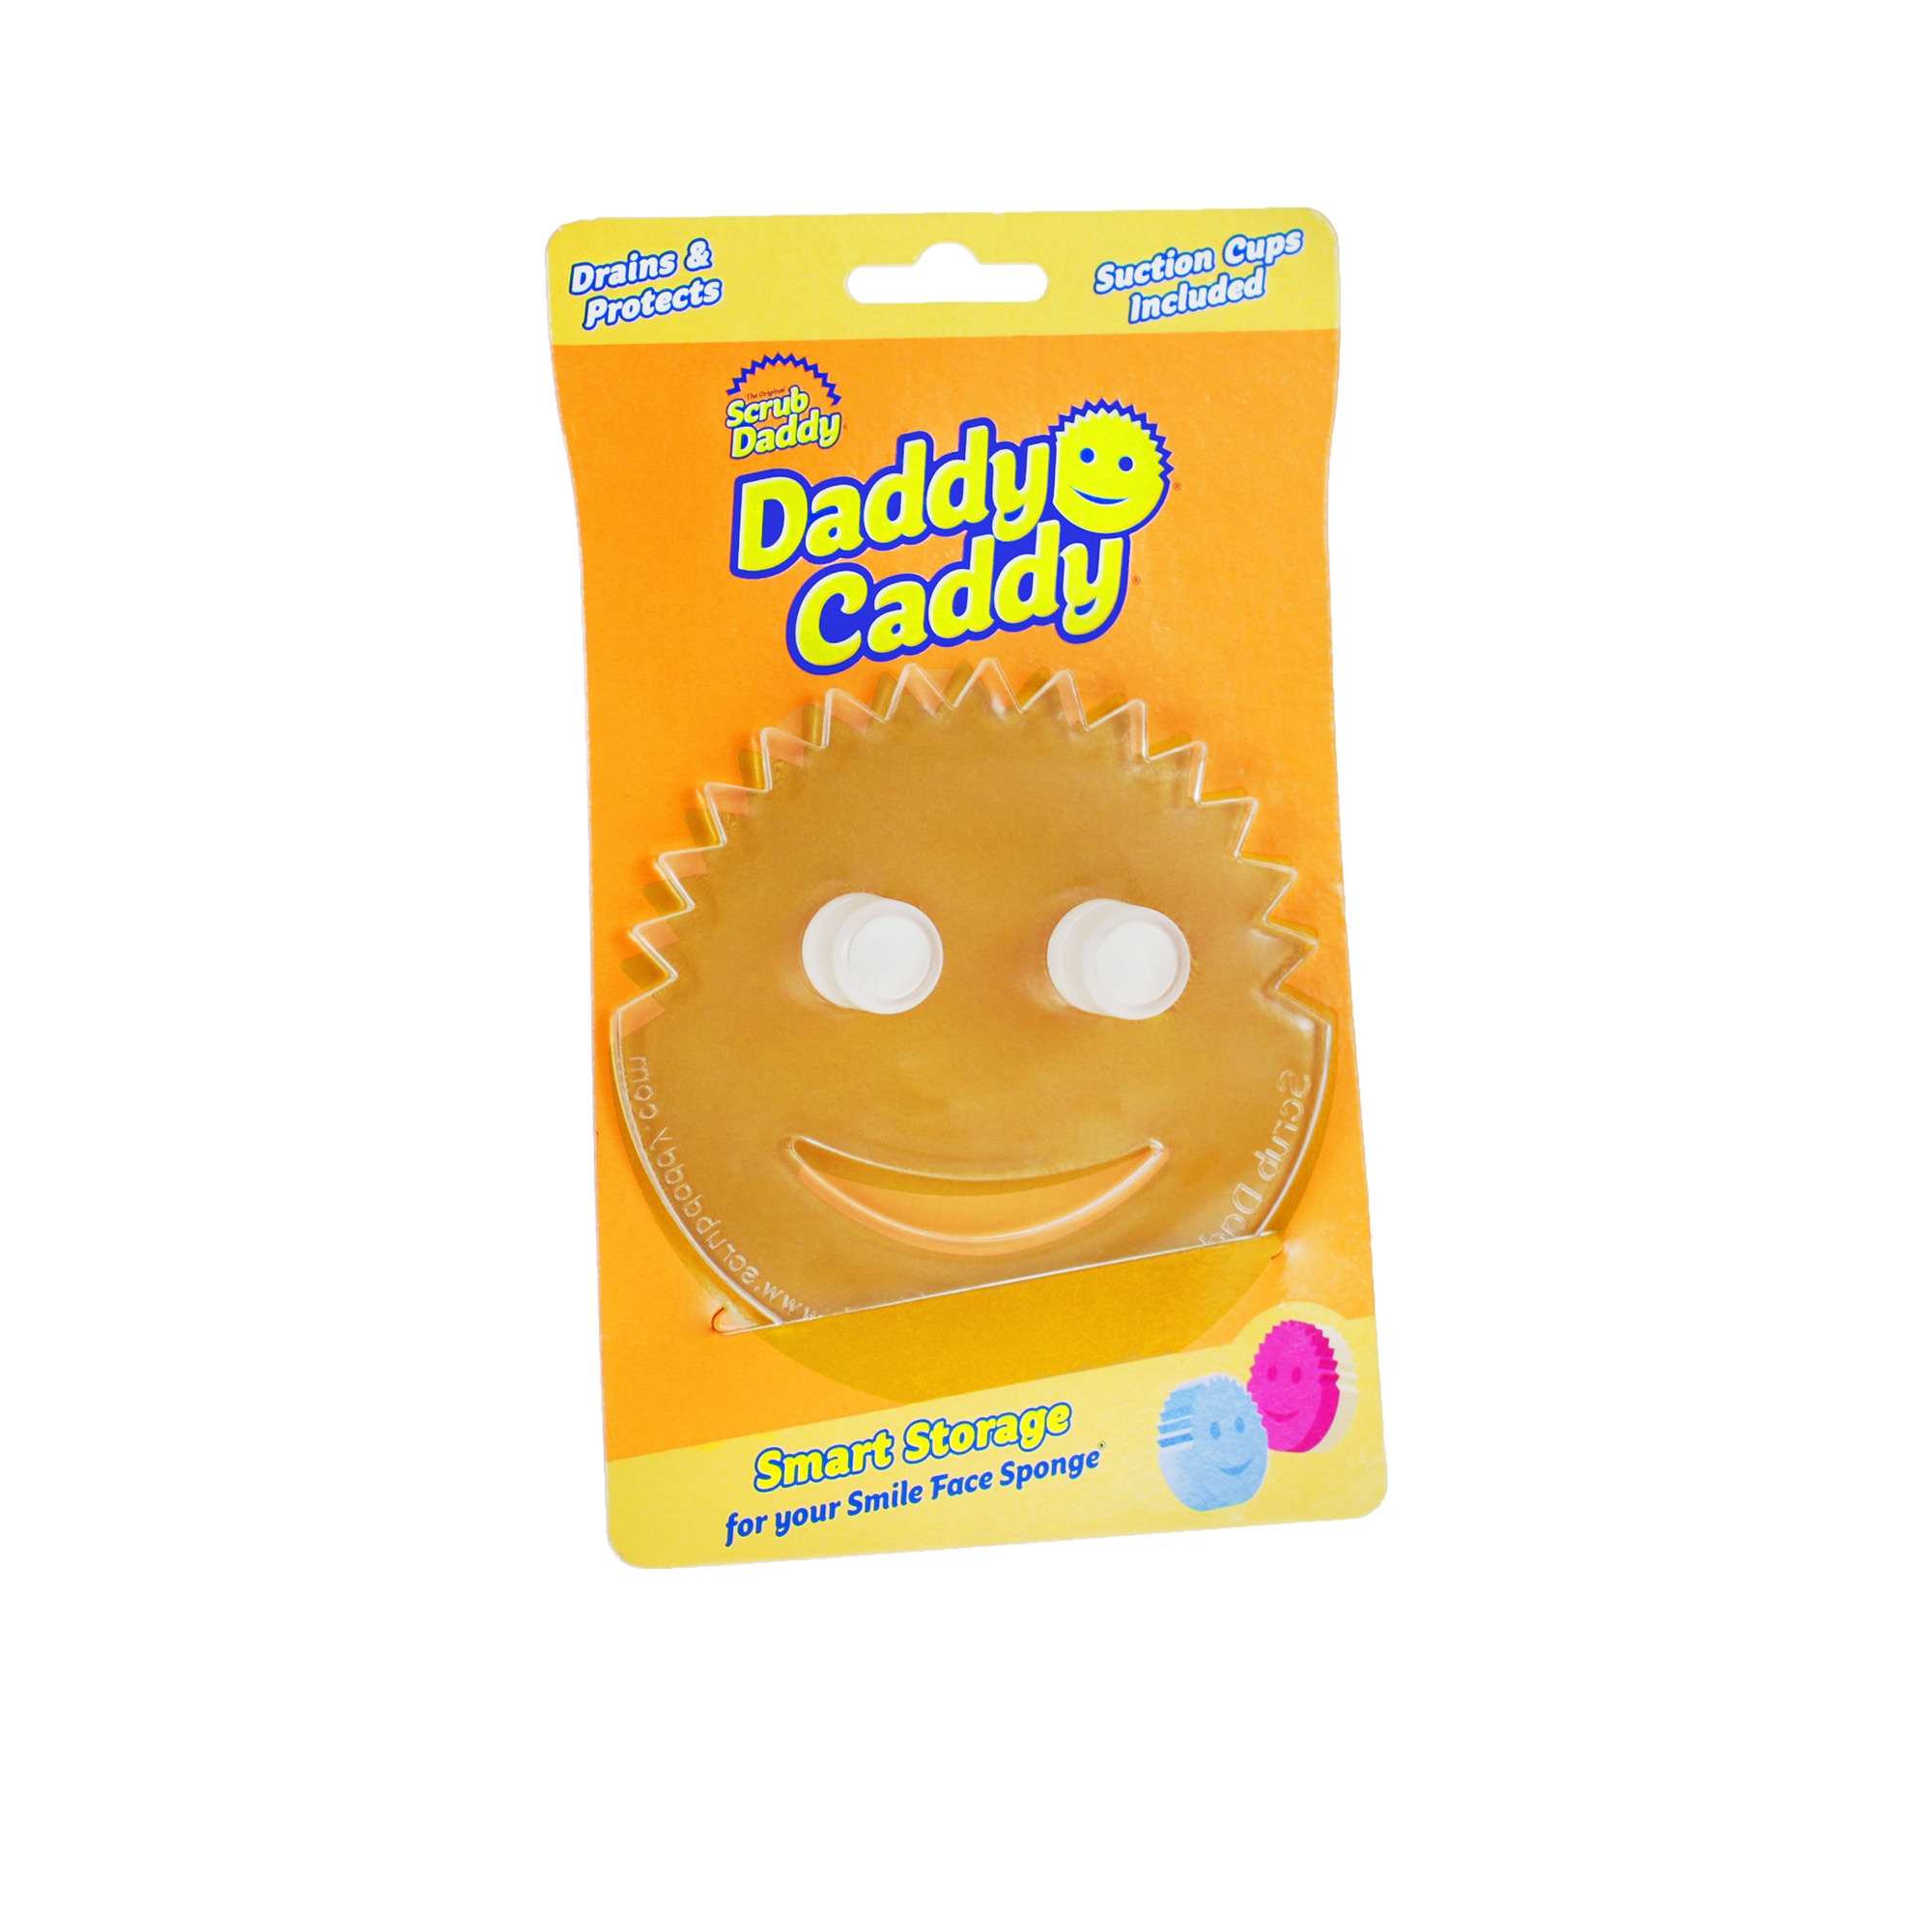 Scrub Daddy - Daddy Caddy Sponge Storage Image 1